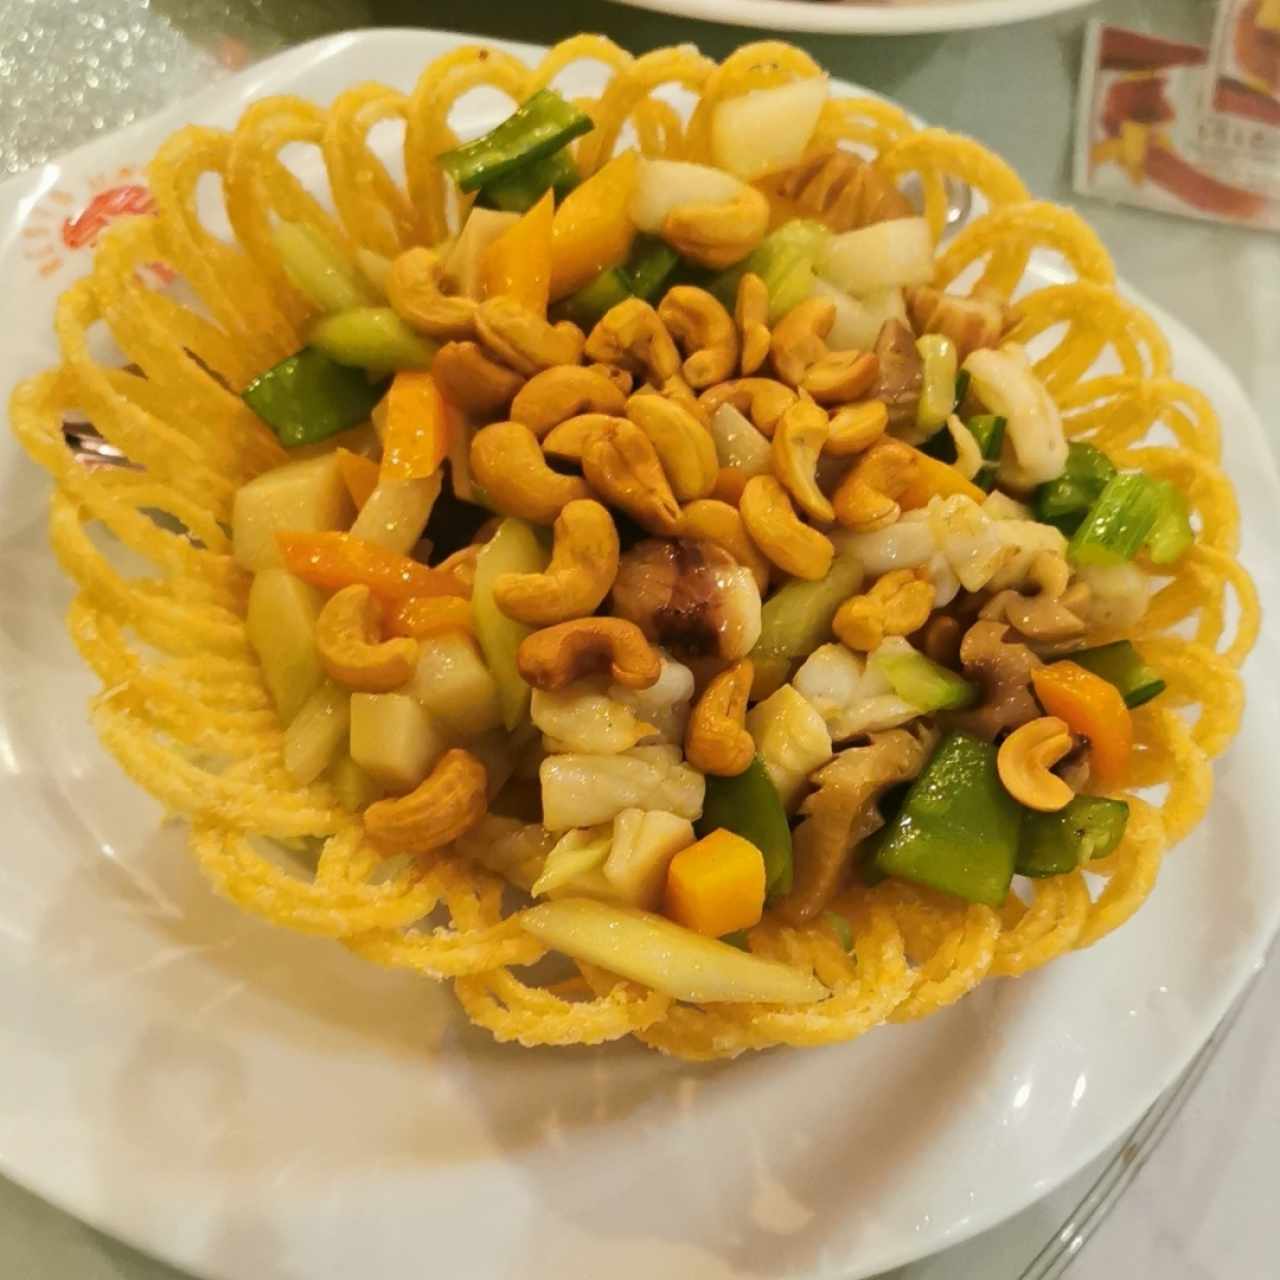 Canasta frita de fideos con mariscos y vegetales 